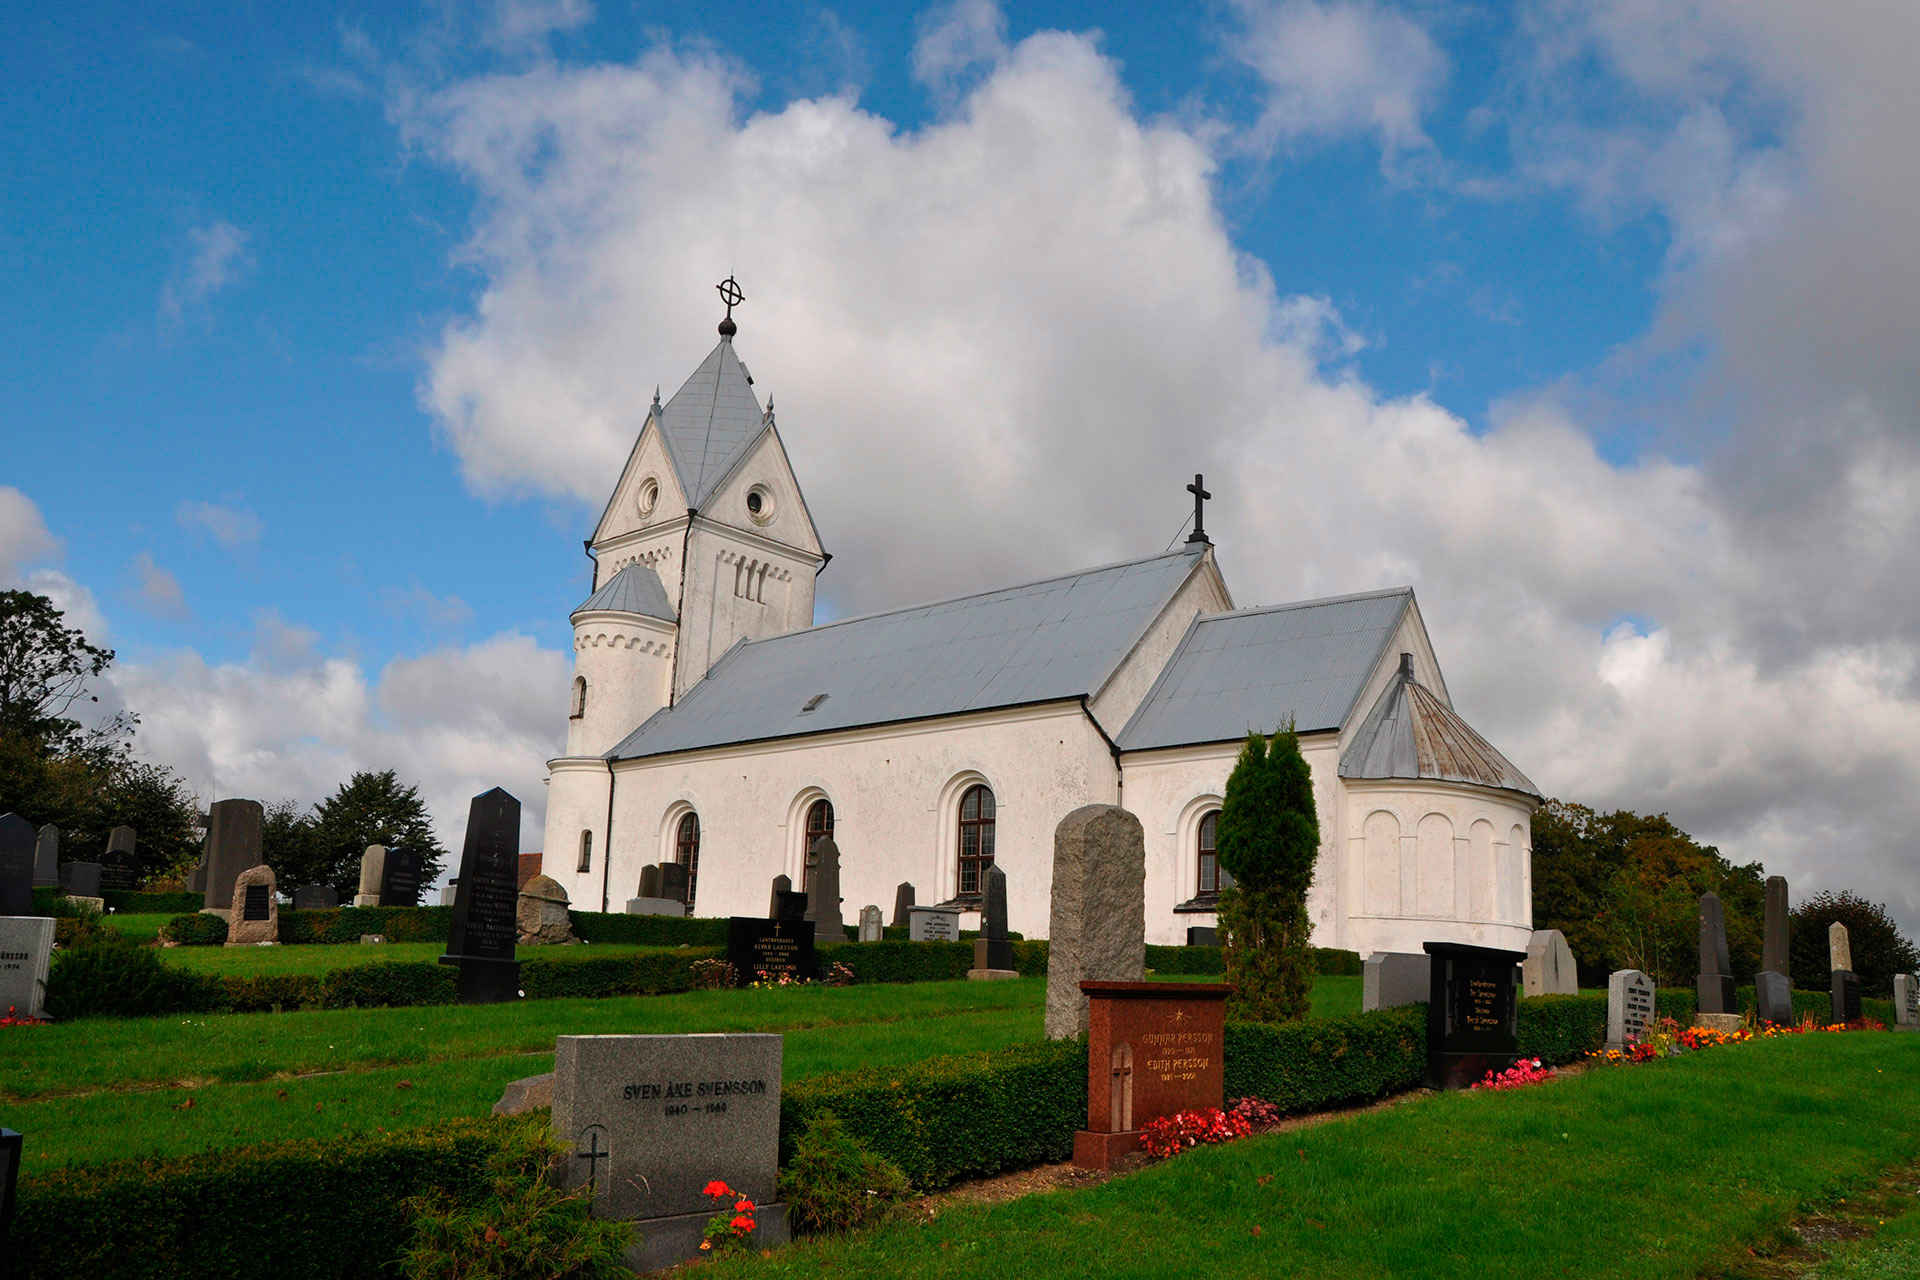 Baldringe kyrkogård ligger i direkt anslutning till Baldringe kyrka.